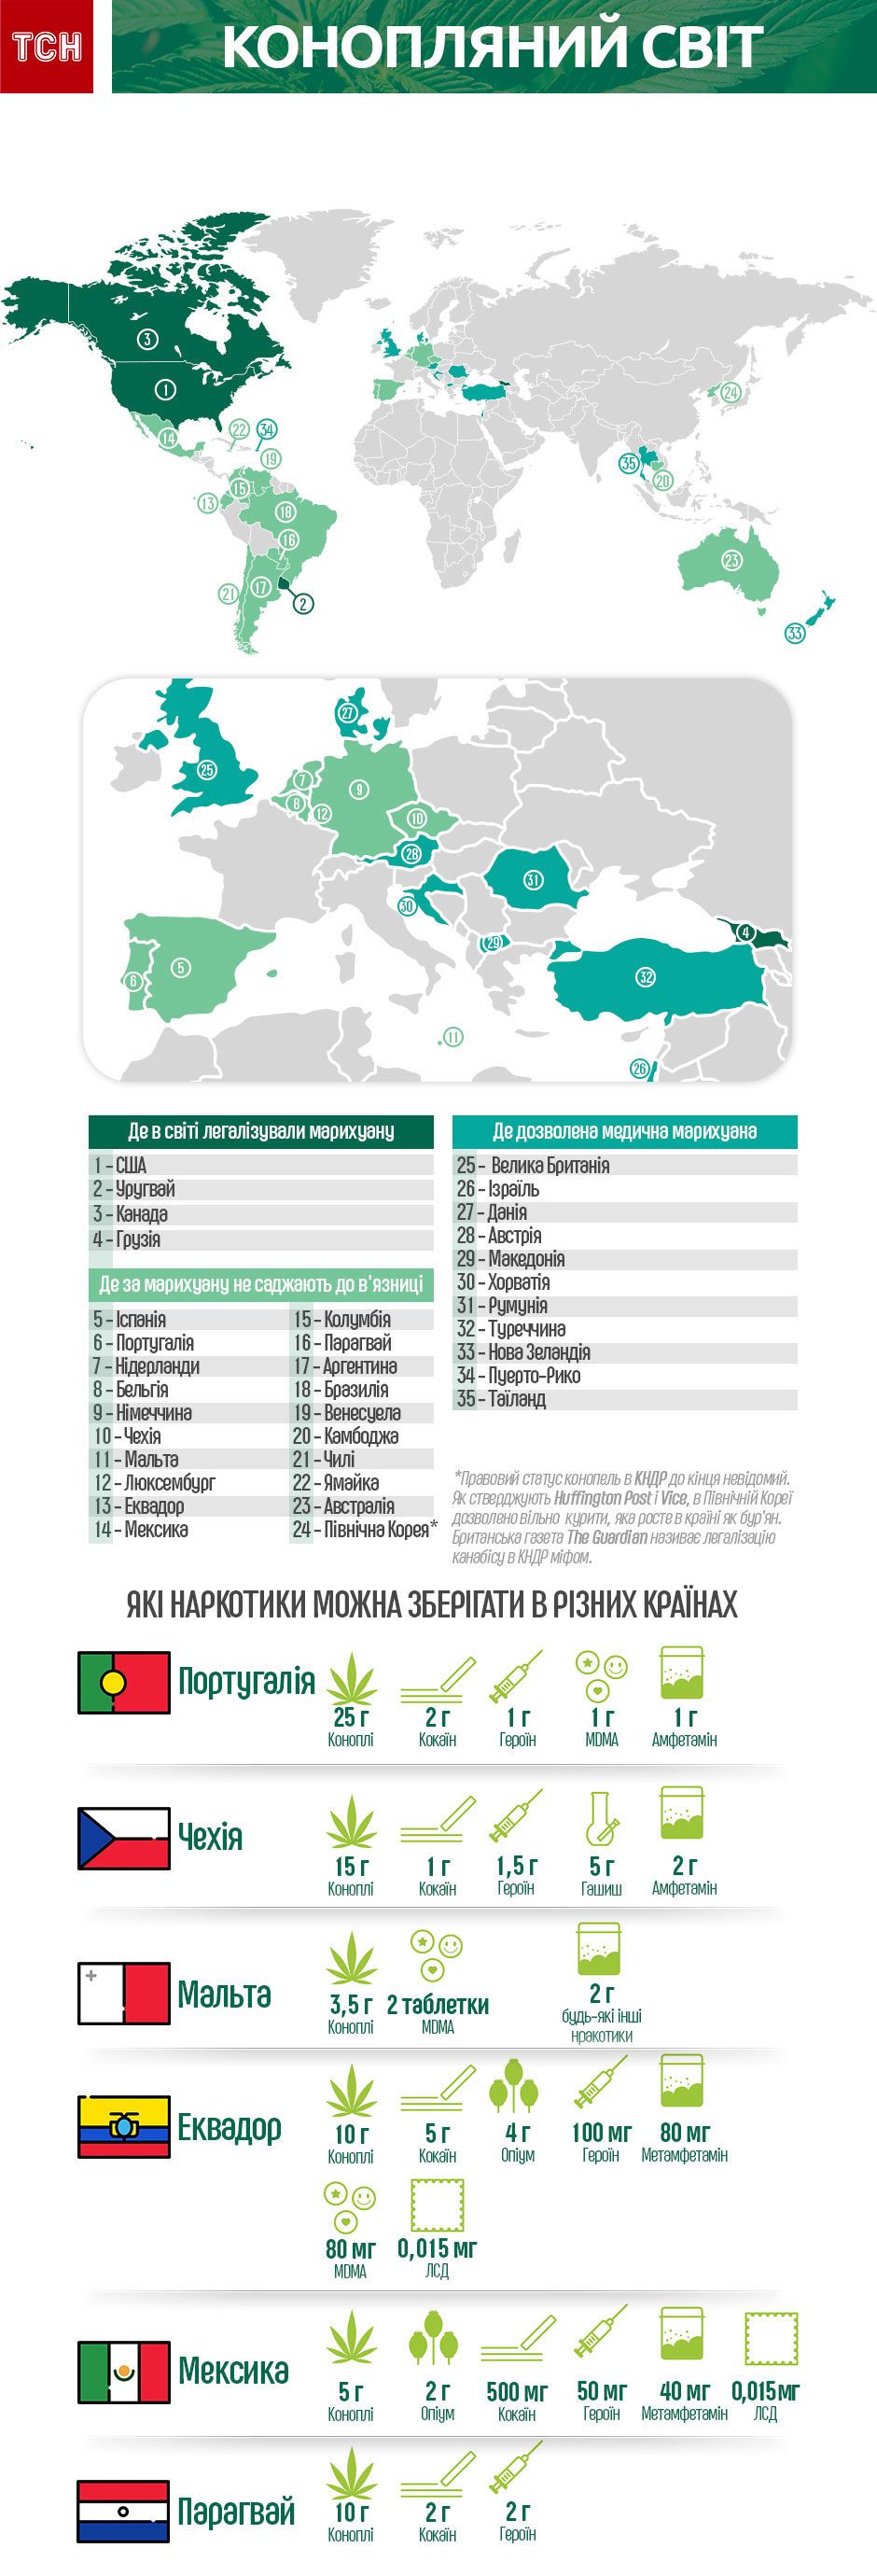 Страны в которых разрешено употребление марихуаны child darknet hydra